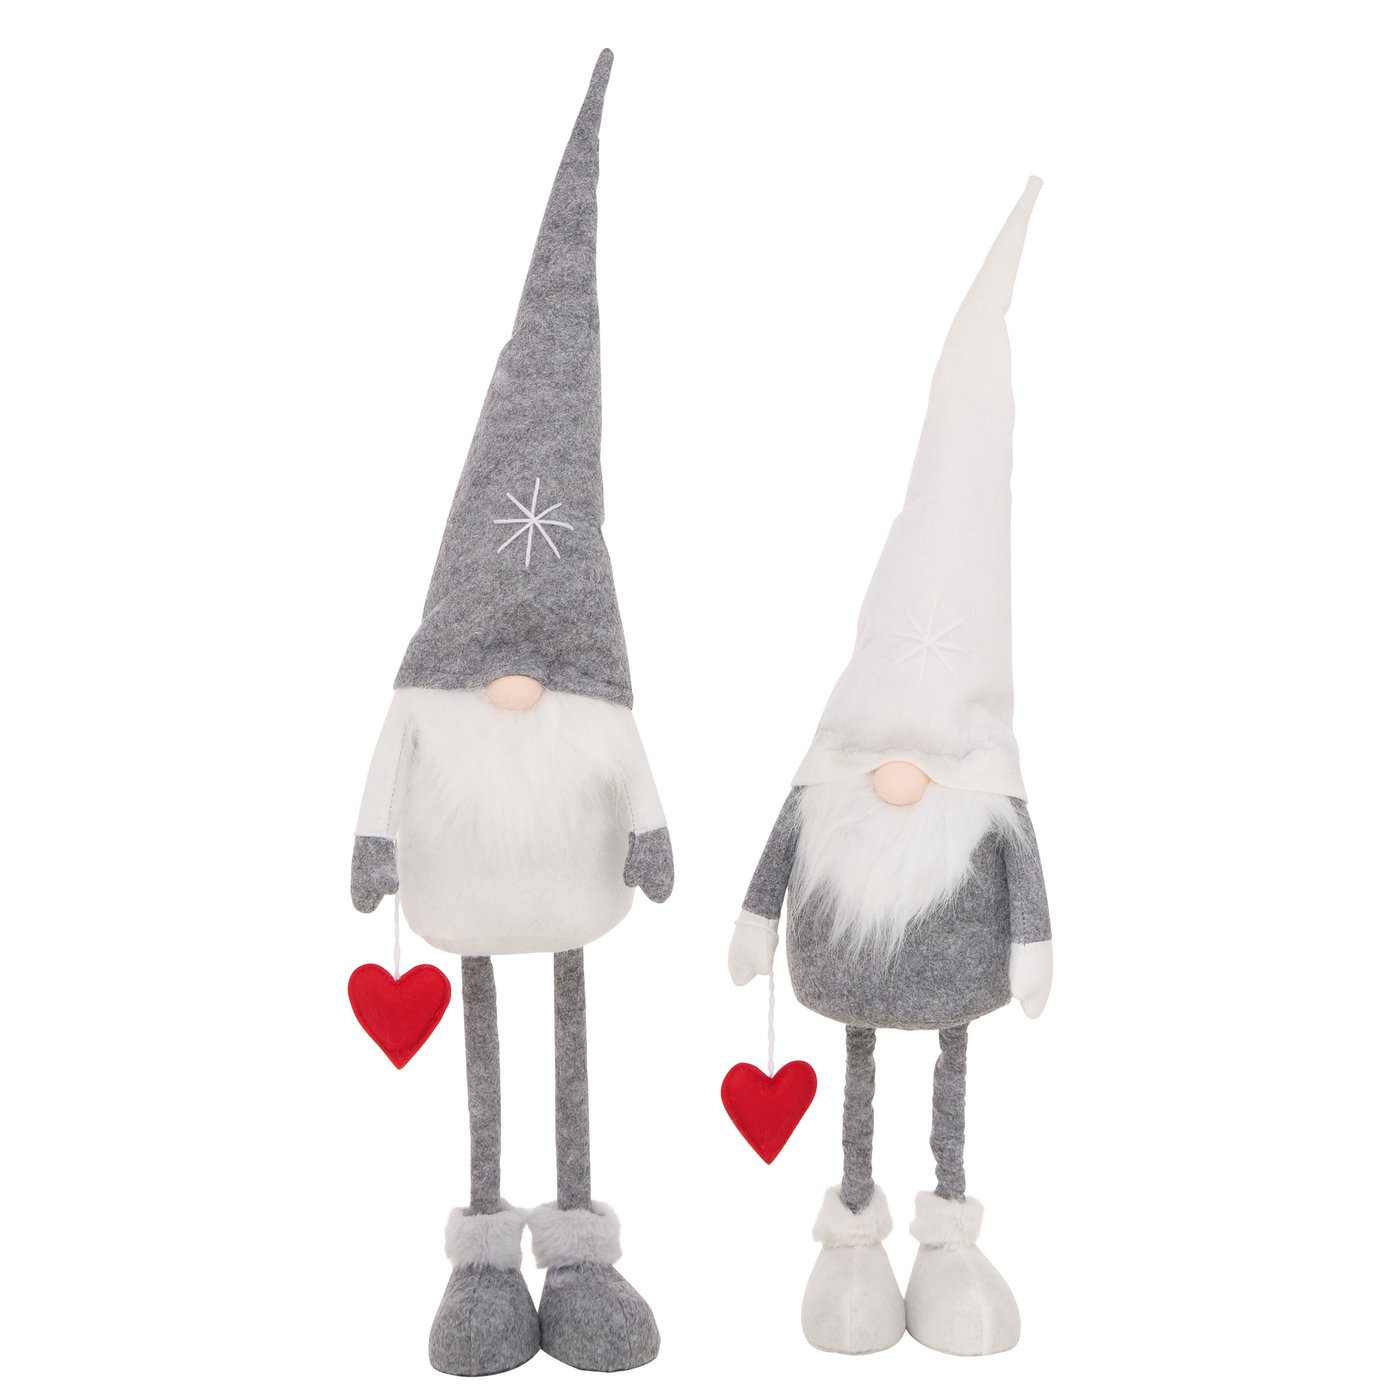 Deko Figur Weihnachtswichtel Wichtel "Melvin" grau weiß H70cm, 2026089, 4066076095360, Boltze xmas Weihnachtsdekoration